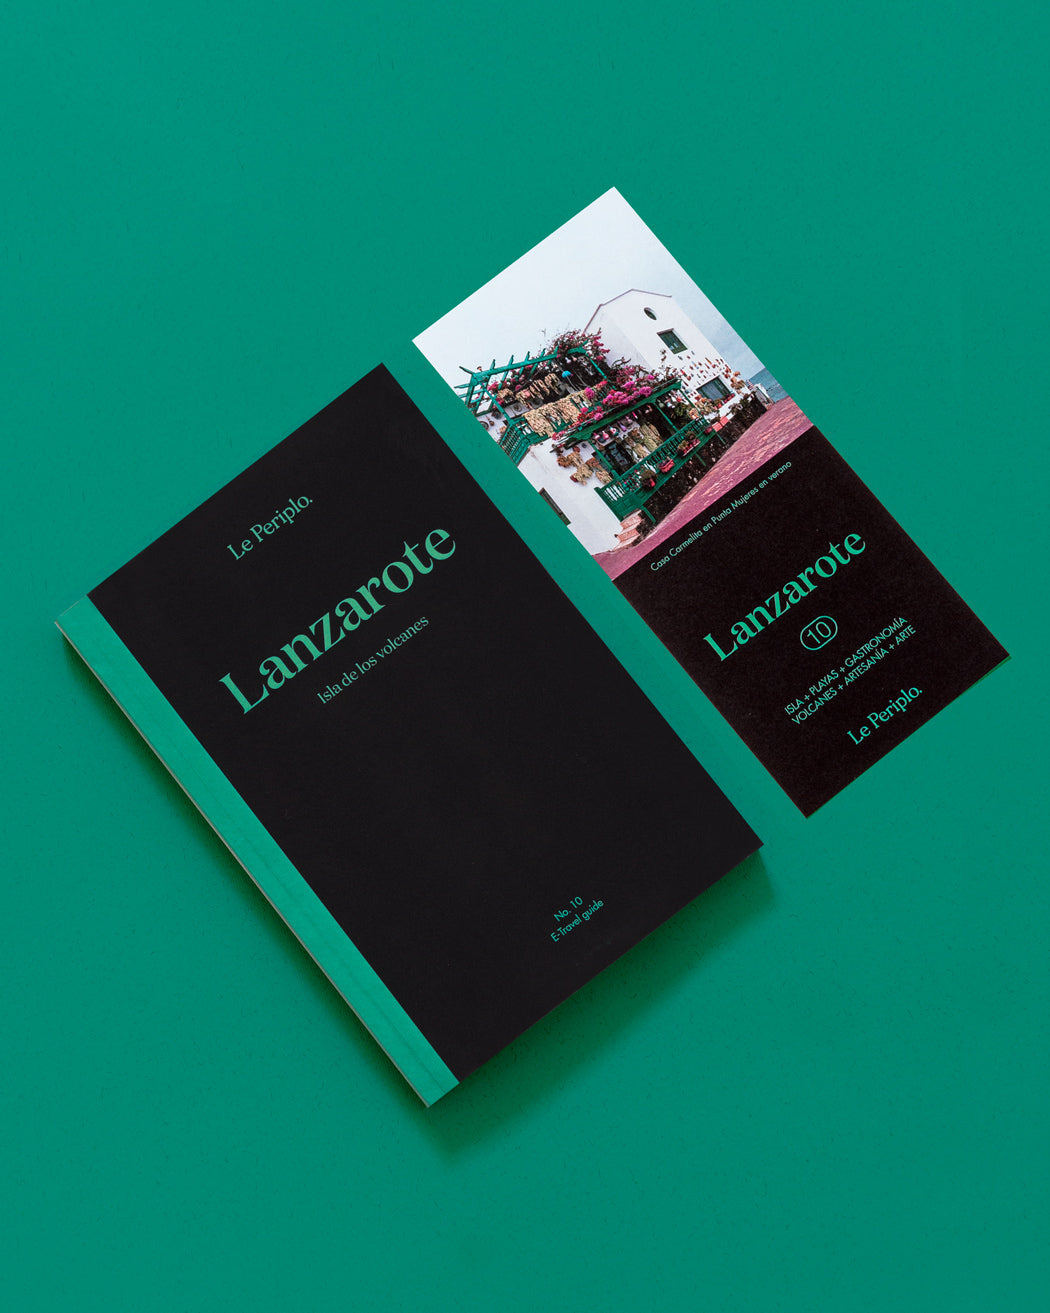 Lanzarote (printed) Spanish version